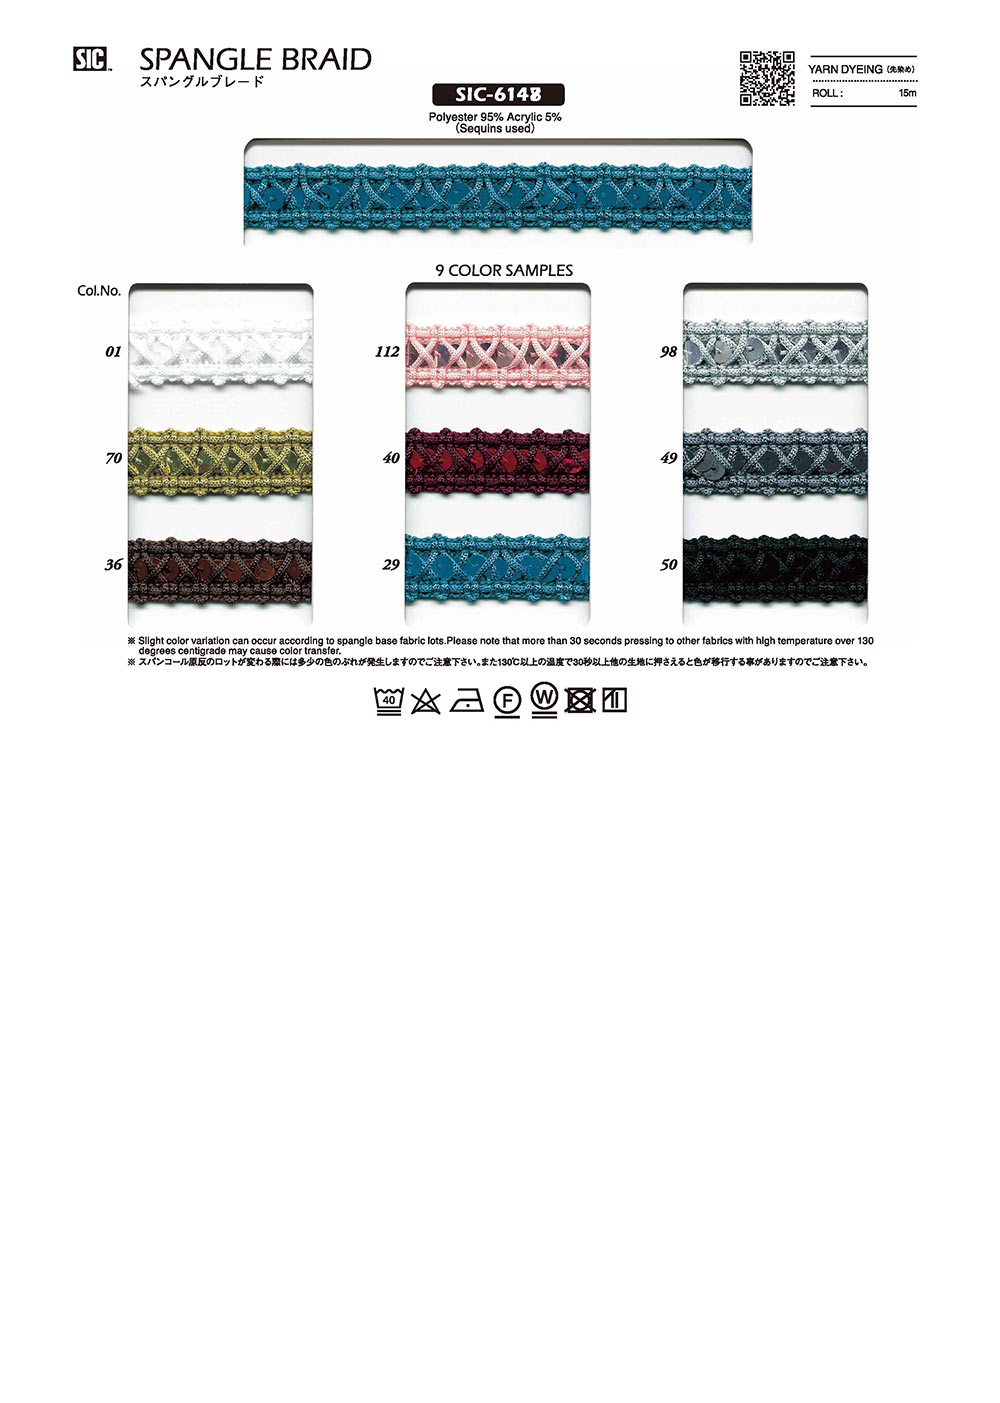 SIC-6148 Spangle Braid[Ribbon Tape Cord] SHINDO(SIC)